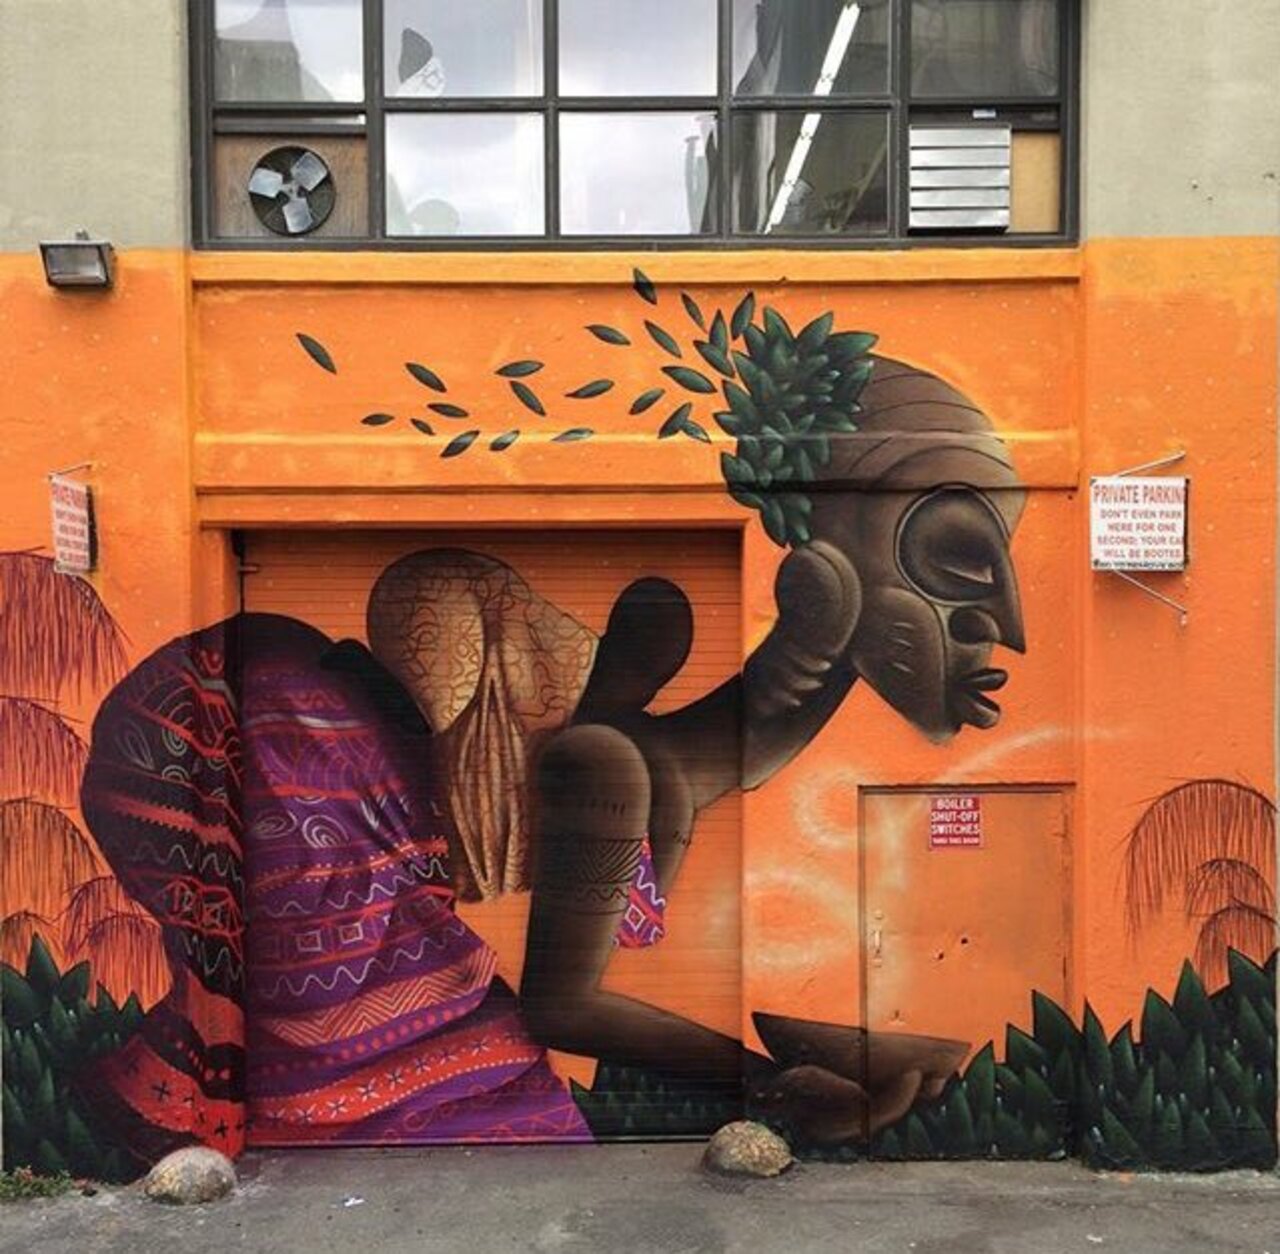 RT belilac "New Street Art by Alexandre Keto in NYC 

#art #graffiti #mural #streetart https://t.co/5GlAopJczl"